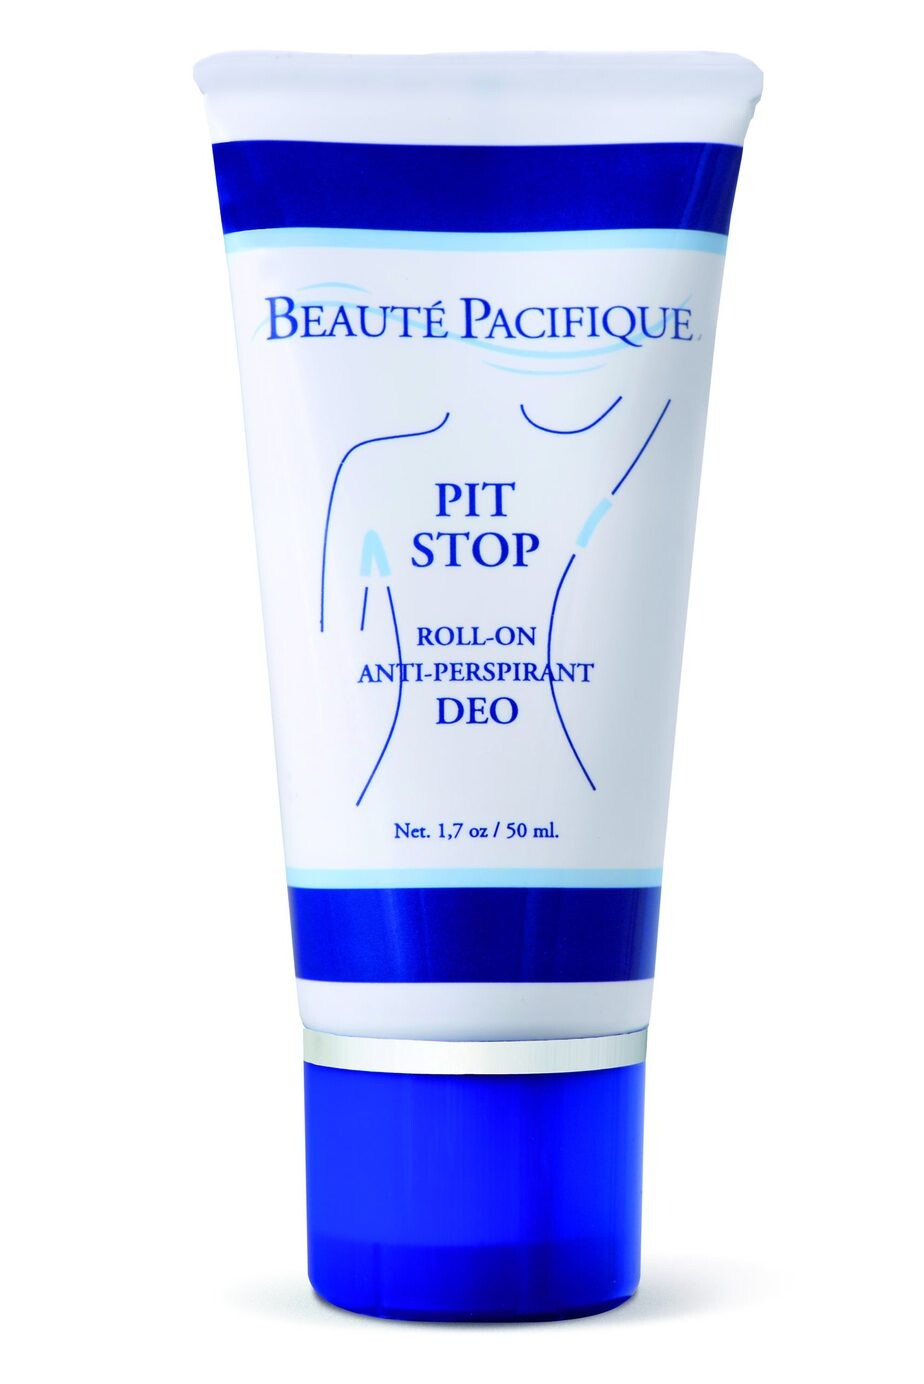 Deodorant Beauté Pacifique PIT STOP Antitranspirant Deo 50ml kaufen